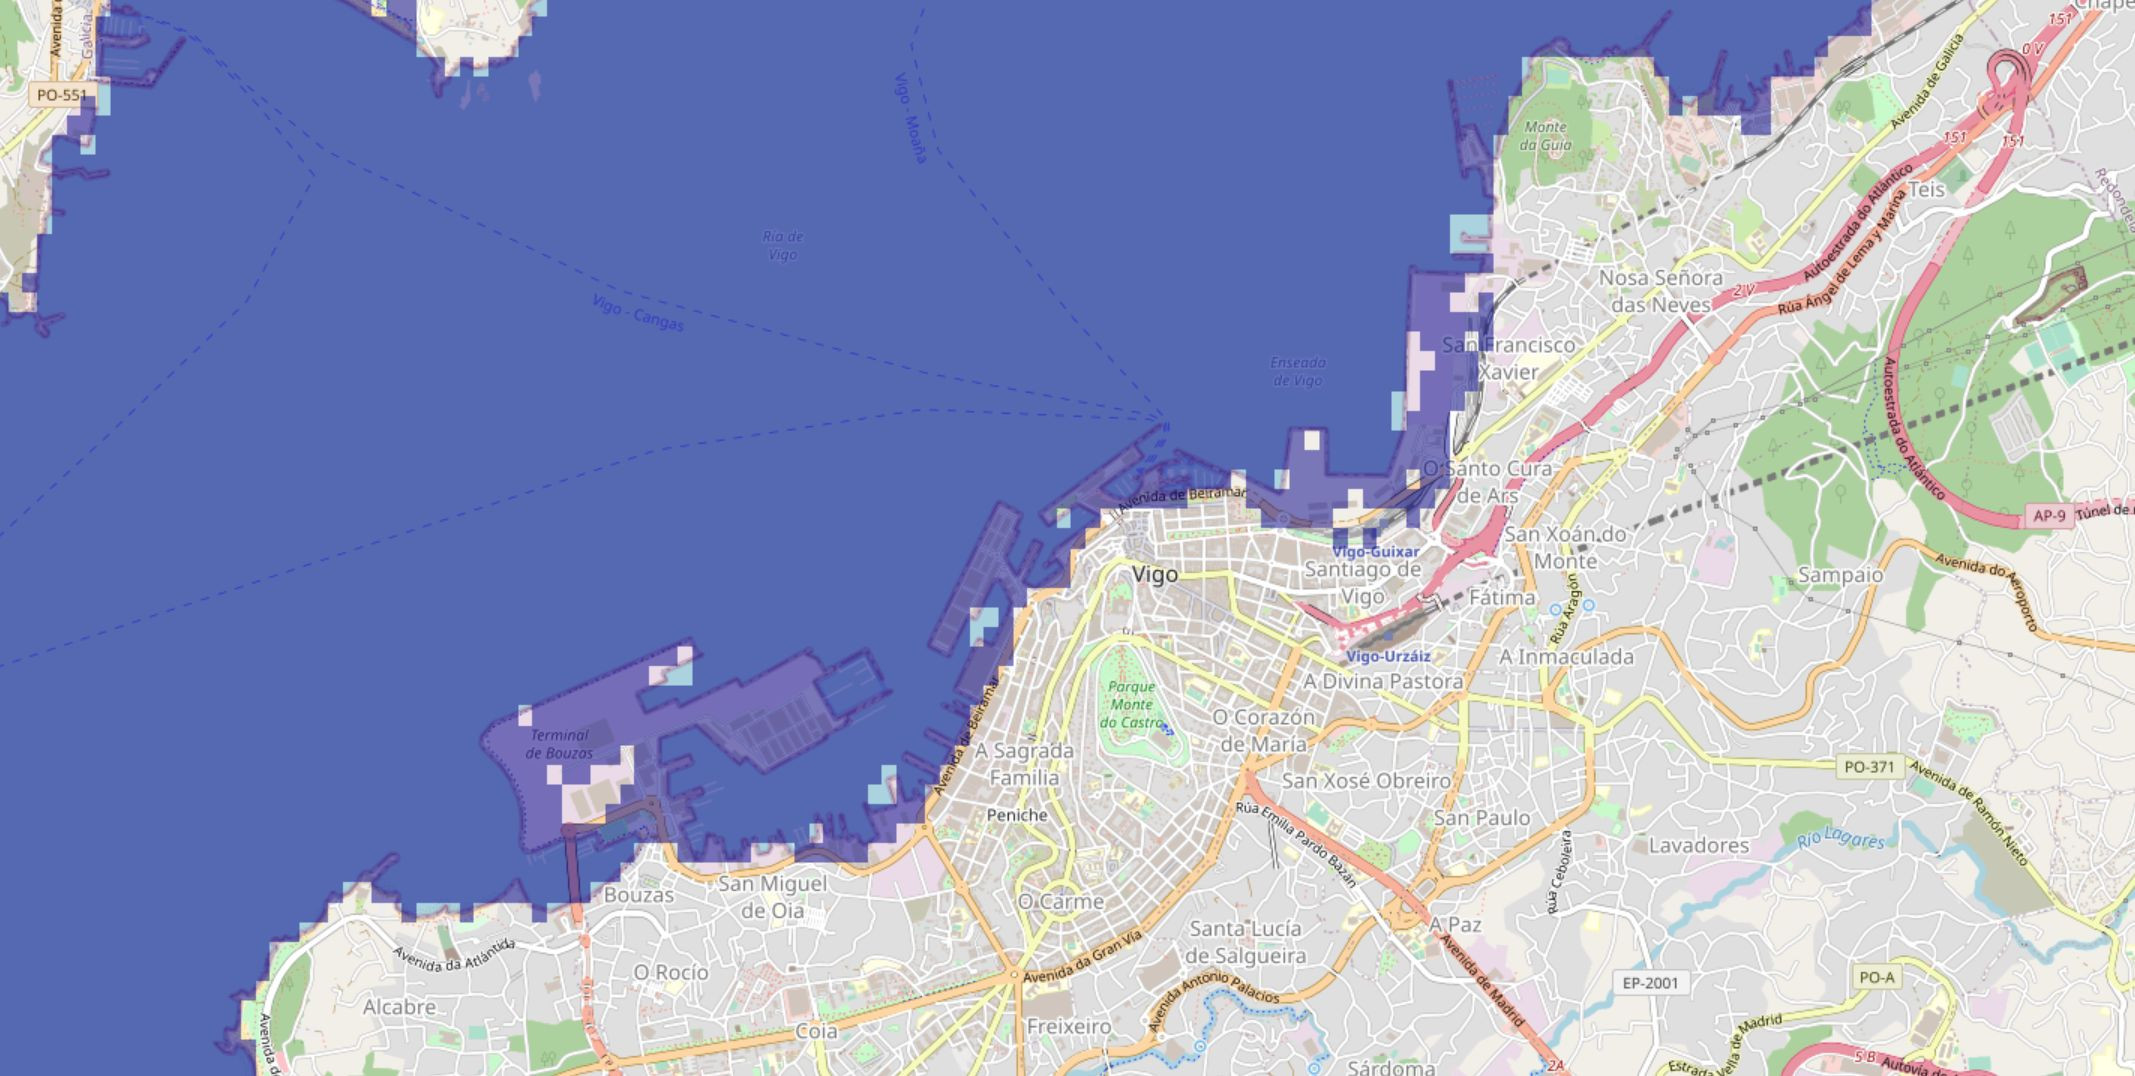 Mapa de Vigo simulando una subida del nivel del mar de 5 metros